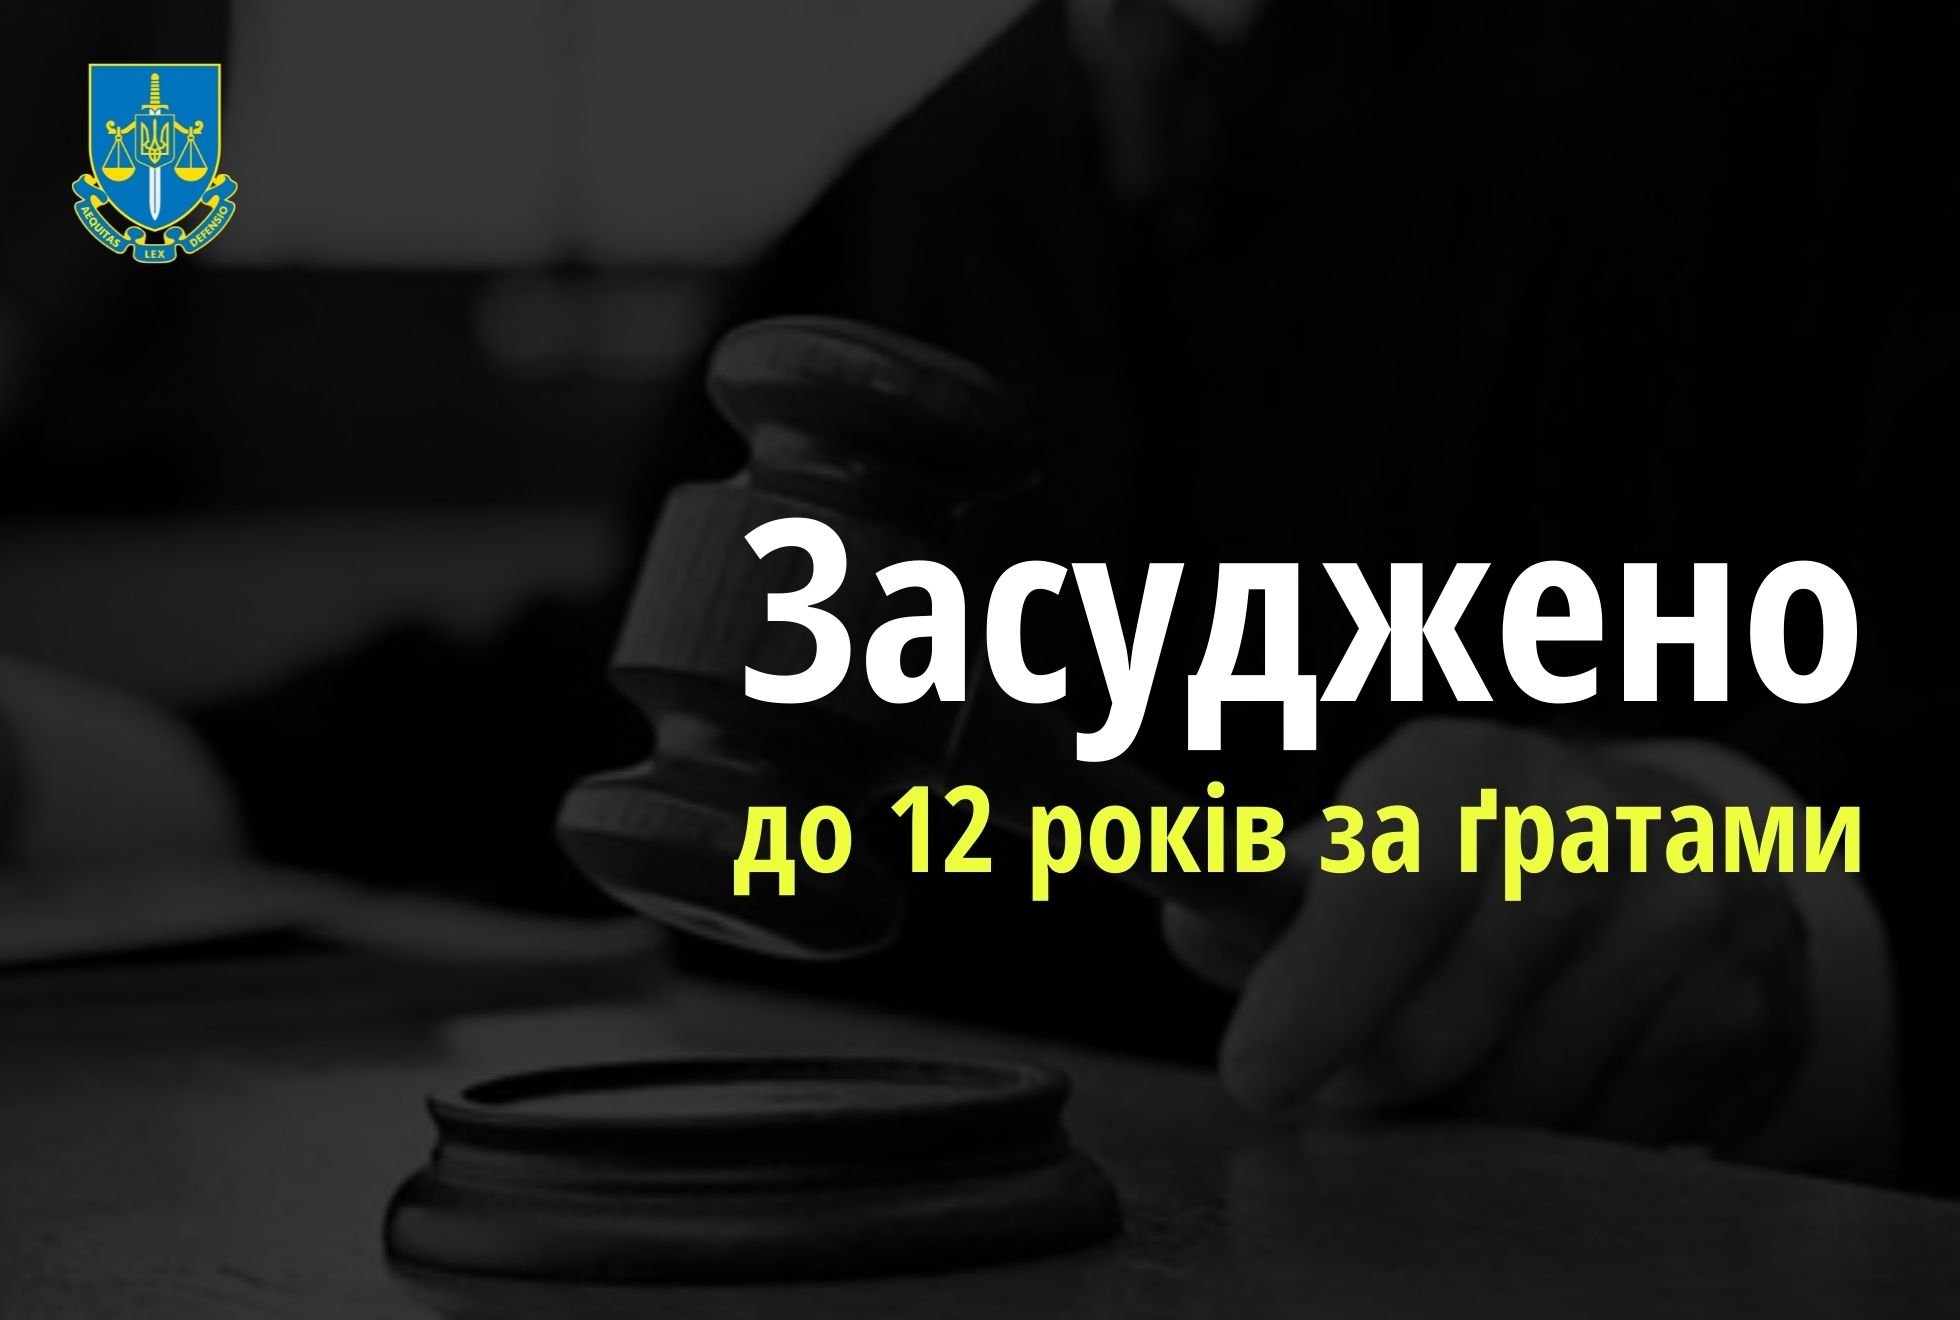 Ще одна суддя-держзрадниця з окупованого Криму отримала 12 років позбавлення волі